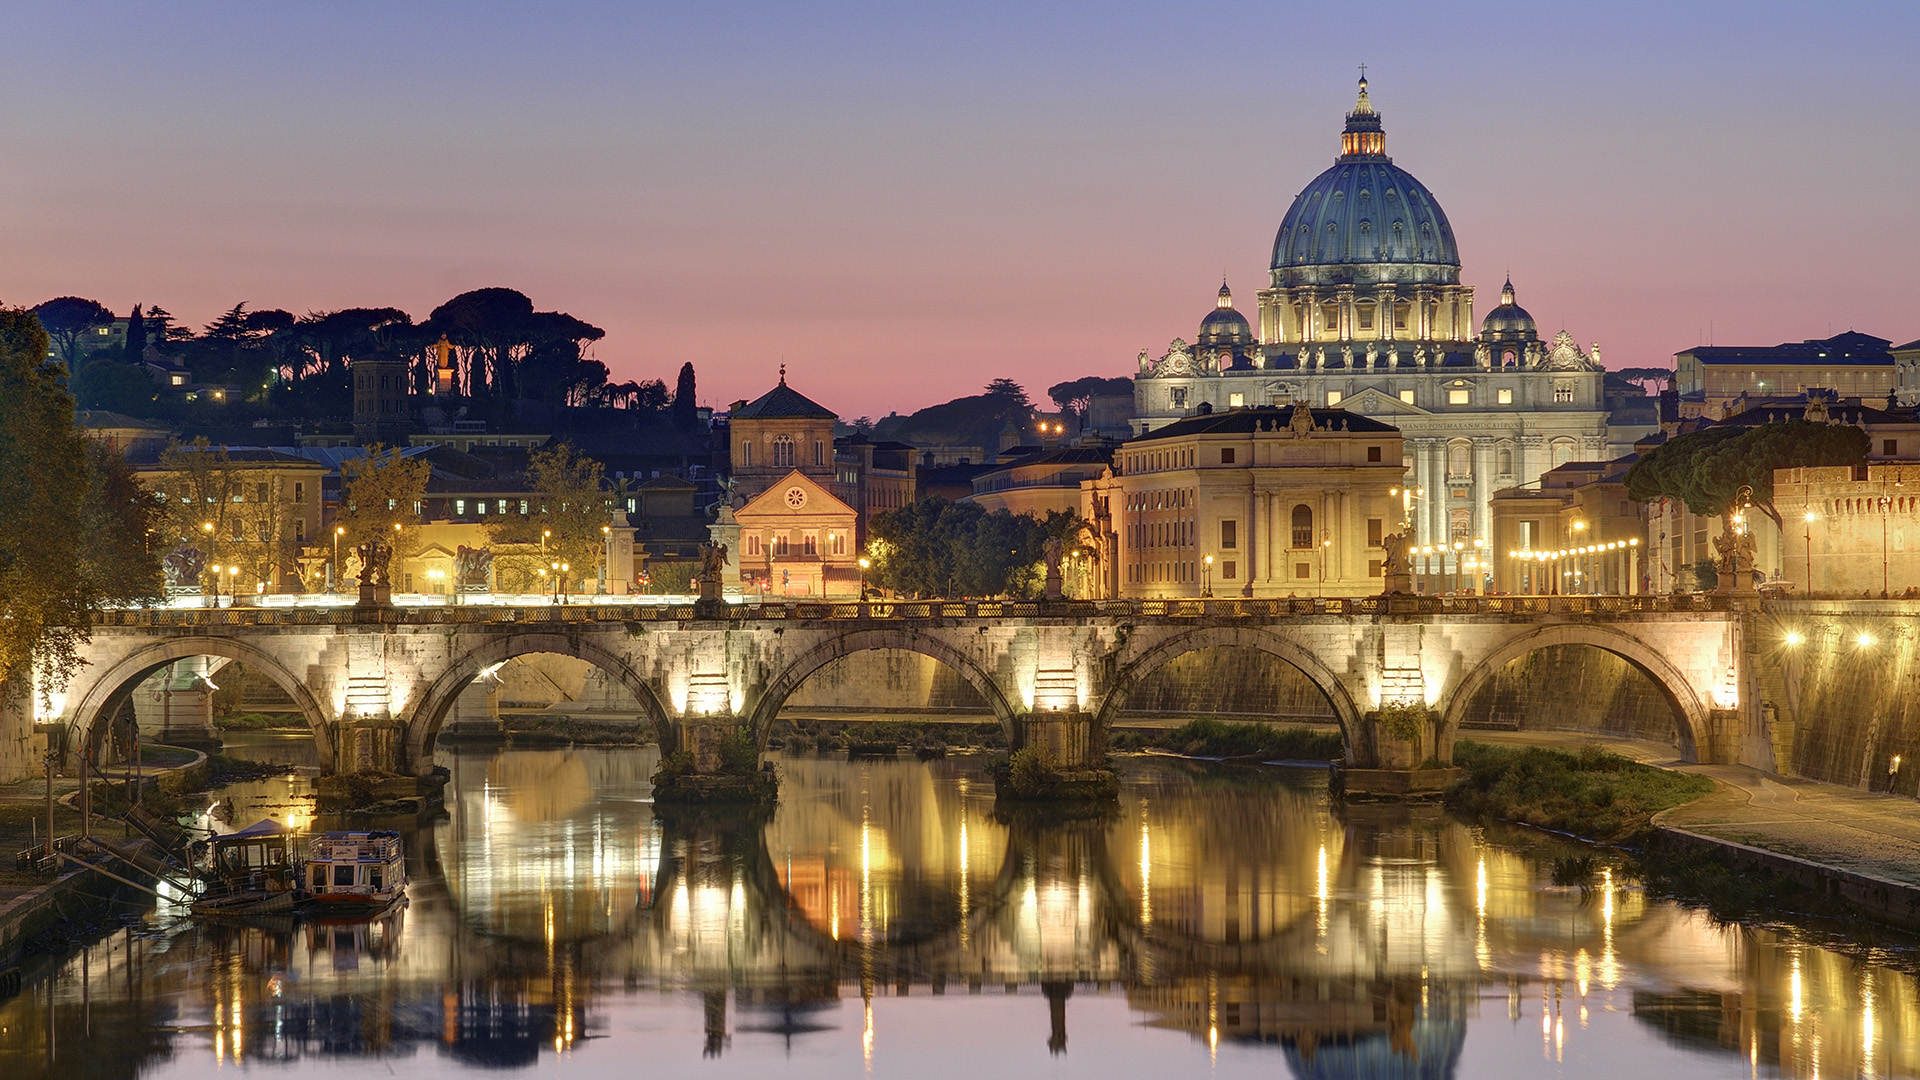 Hình nền máy tính Vatican City Rome Italy: Làm tất cả chức năng của máy tính trở nên phong phú và thú vị hơn với những hình ảnh phong cảnh hùng vĩ của Ý. Tận hưởng những hình nền đẹp nhất của Vatican City, Rome, Italy để đem lại cho tâm trí bạn sự bình yên và thư giãn.